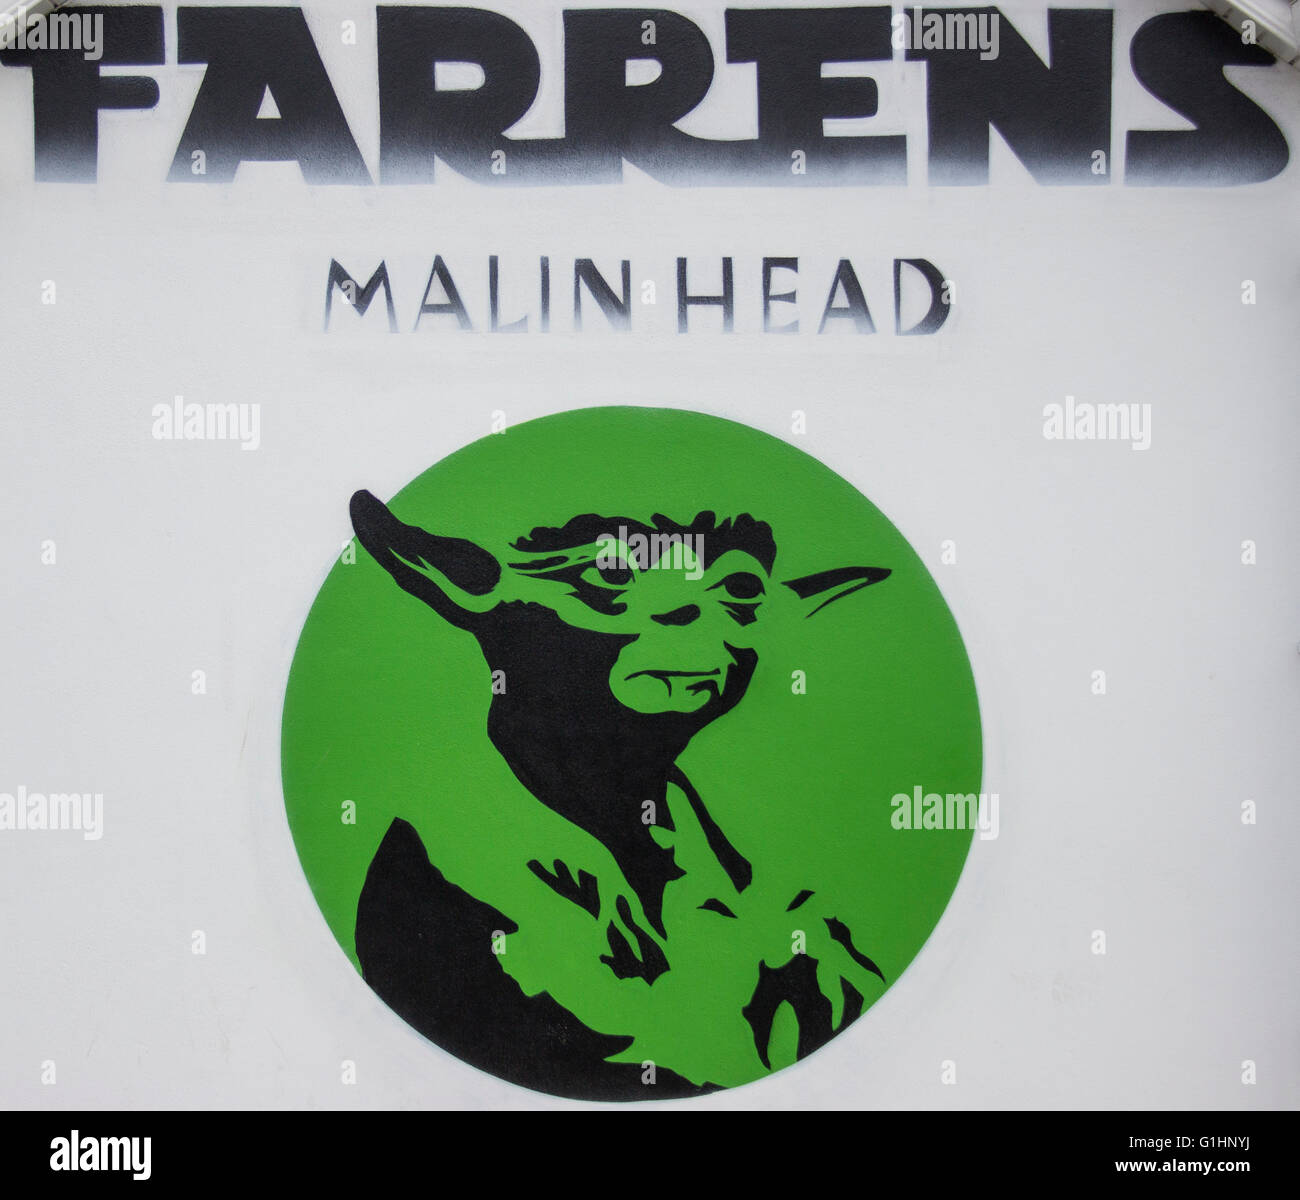 Farren's Bar Malin Head Stock Photo